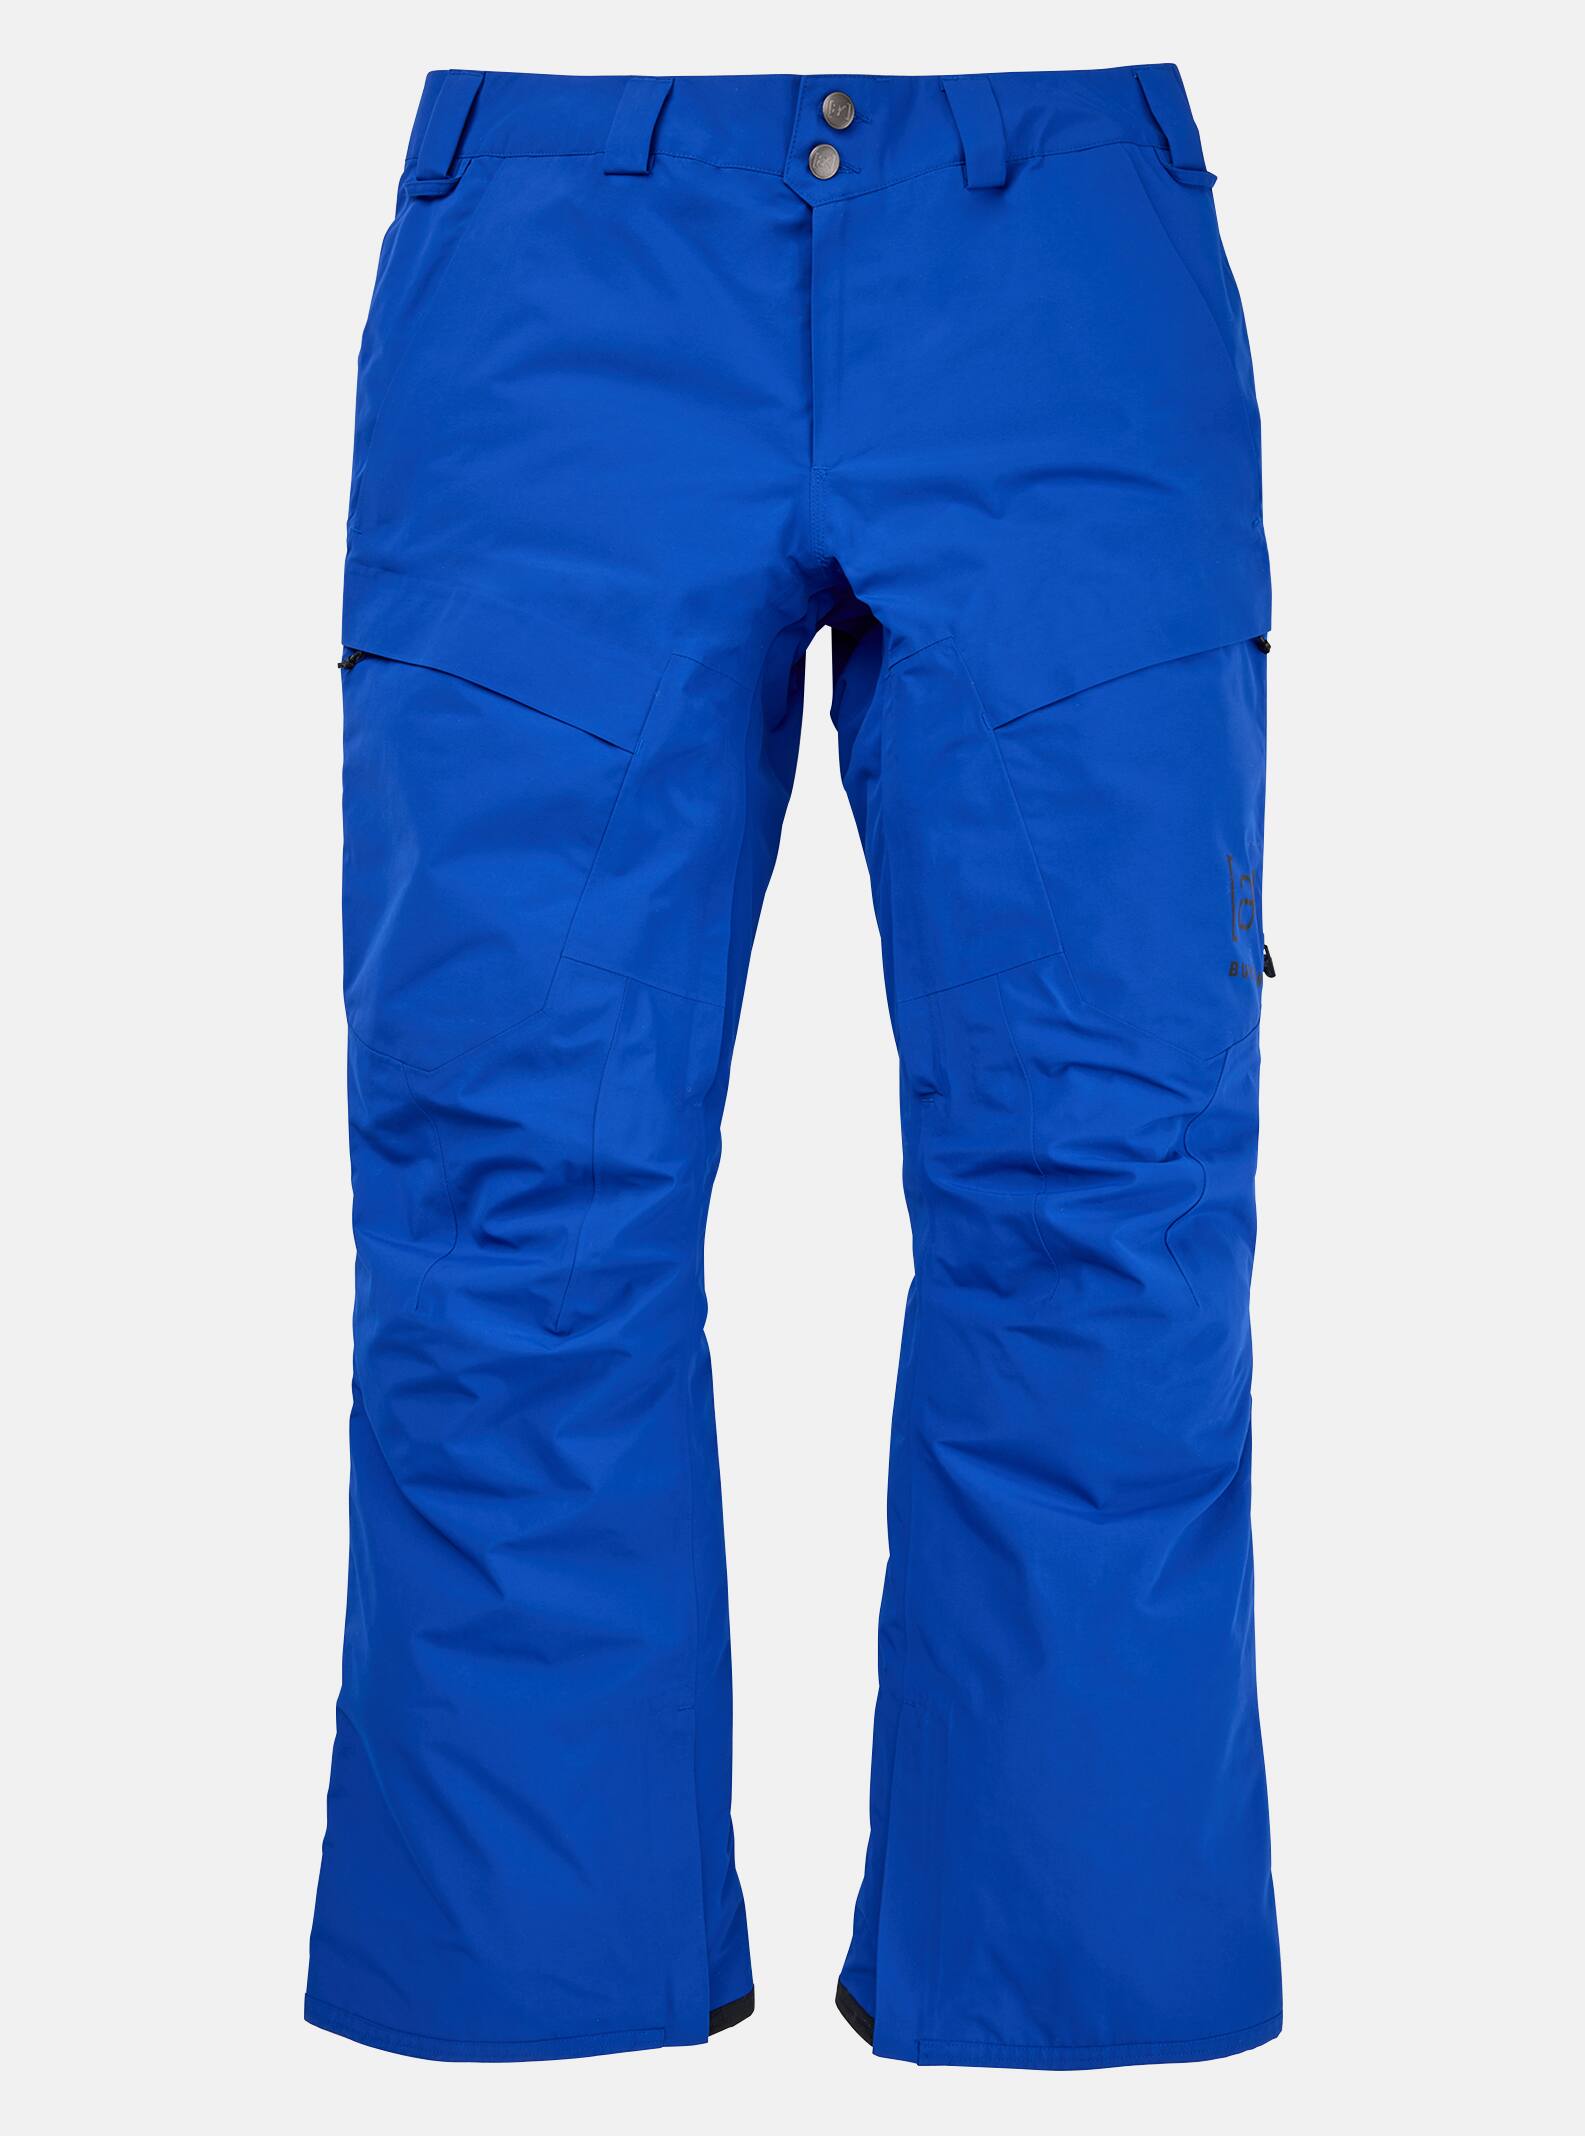 Men's Burton [ak] Swash GORE‑TEX 2L Pants